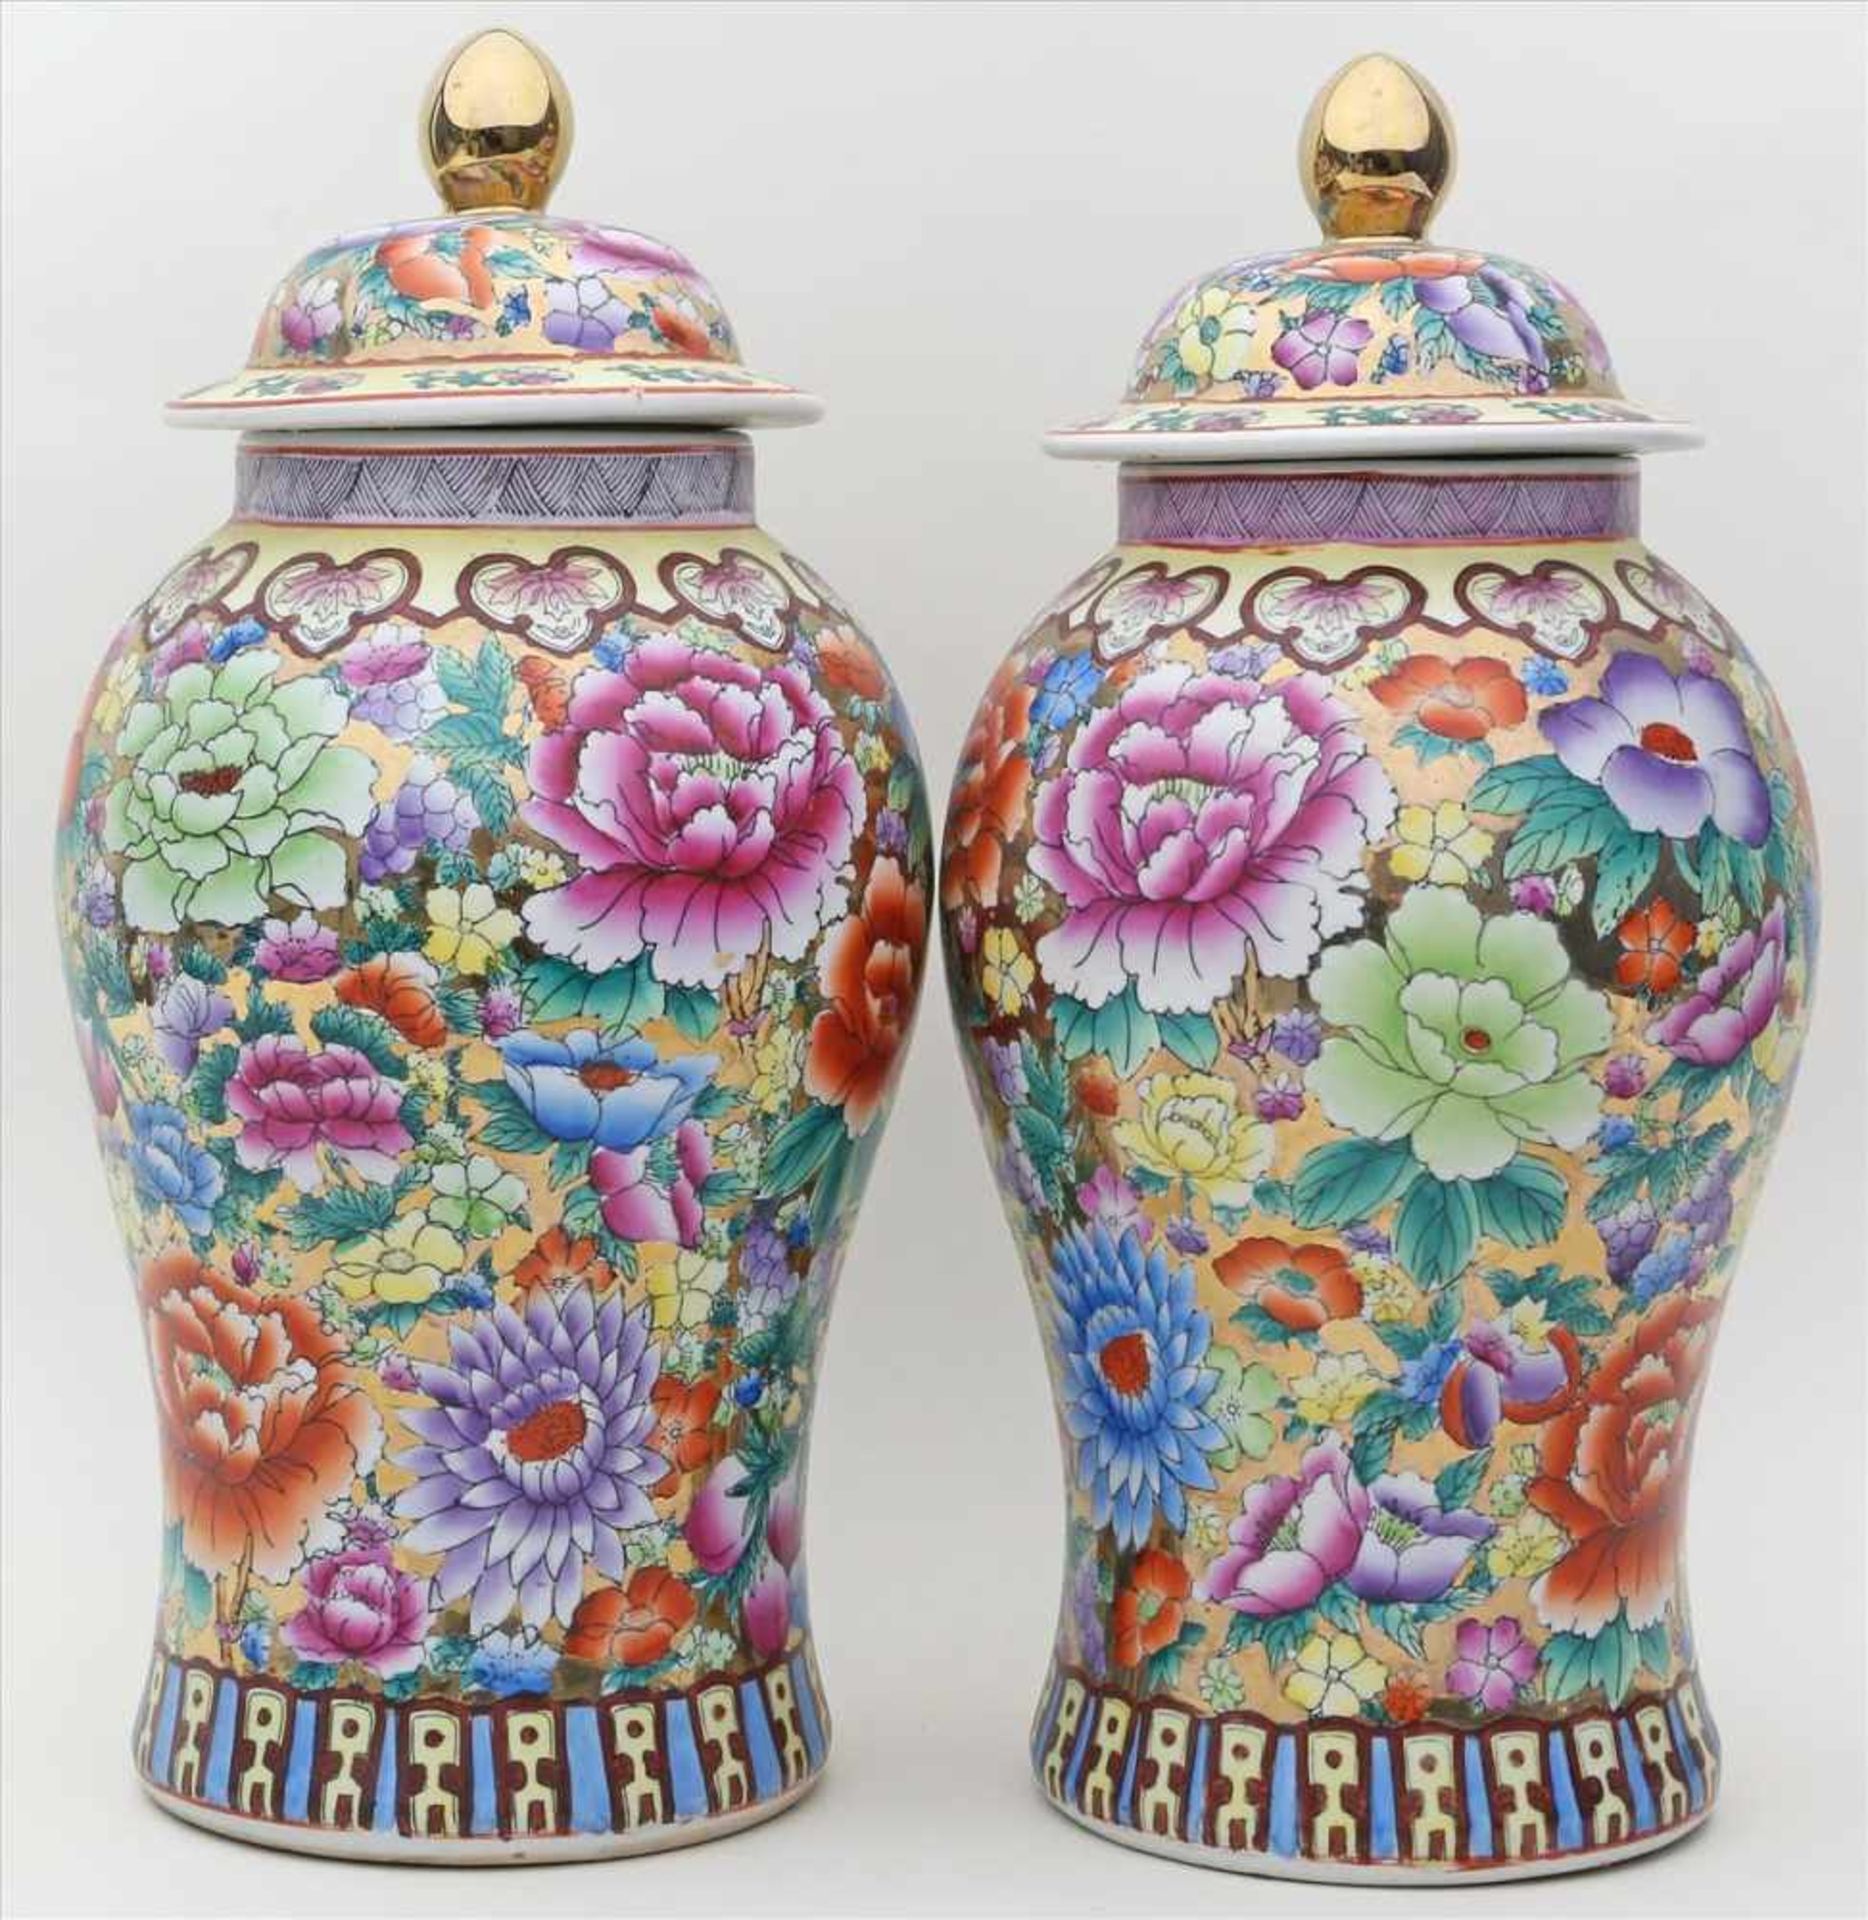 Paar Deckelvasen.Porzellan. Vollflächig bunte Blumenmalerei, teils über goldenem Fond. China. H.